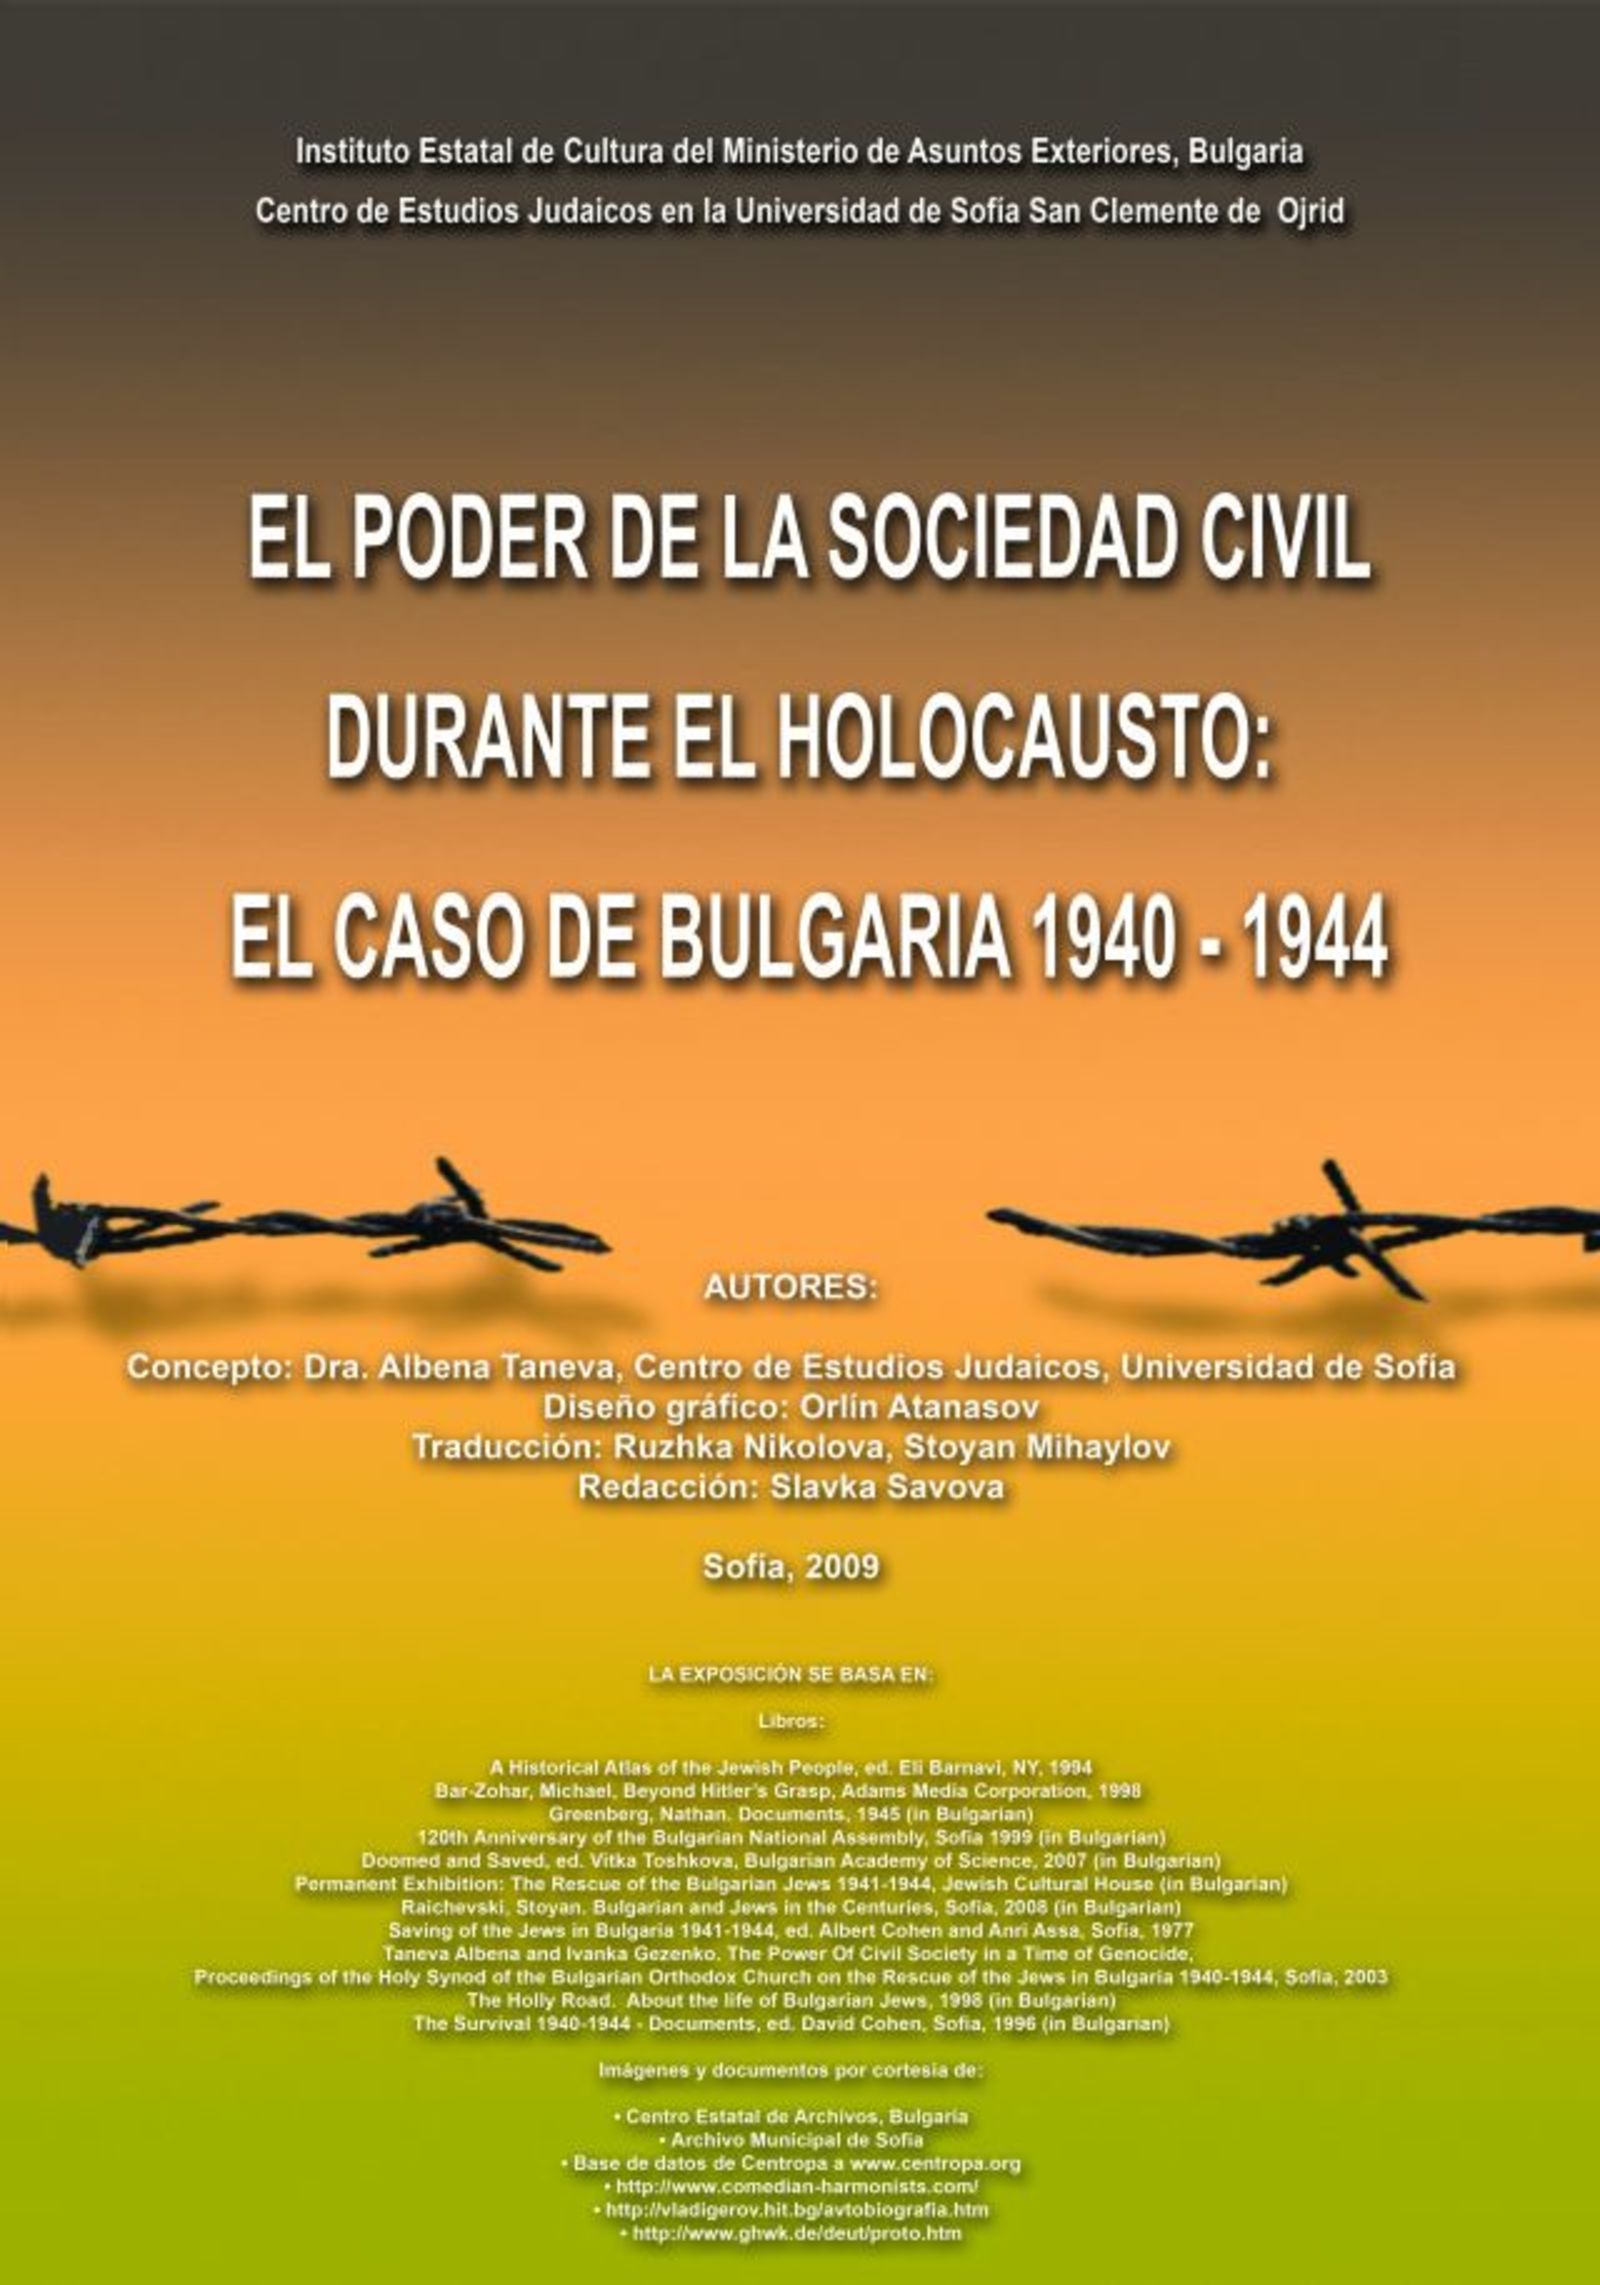 Изложбата „Силата на гражданското общество: Съдбата на евреите в България” в Мадрид